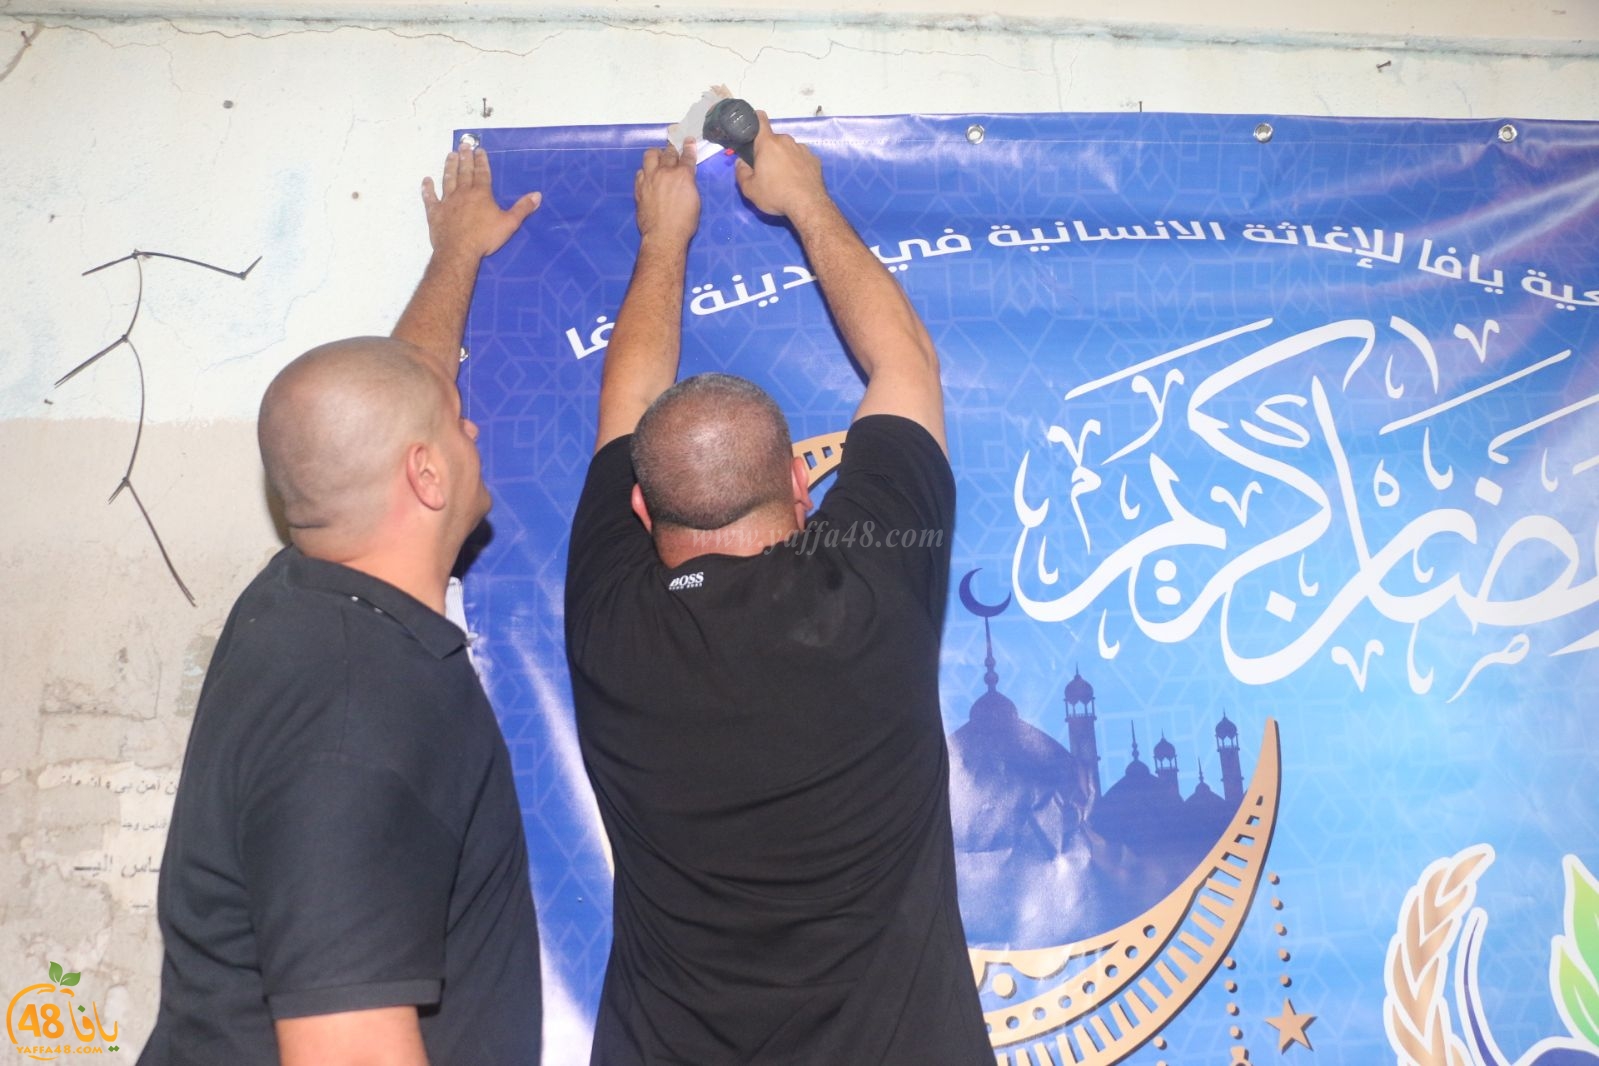  بالصور: جمعية يافا تُهنئ المسلمين في المدينة بحلول شهر رمضان المبارك